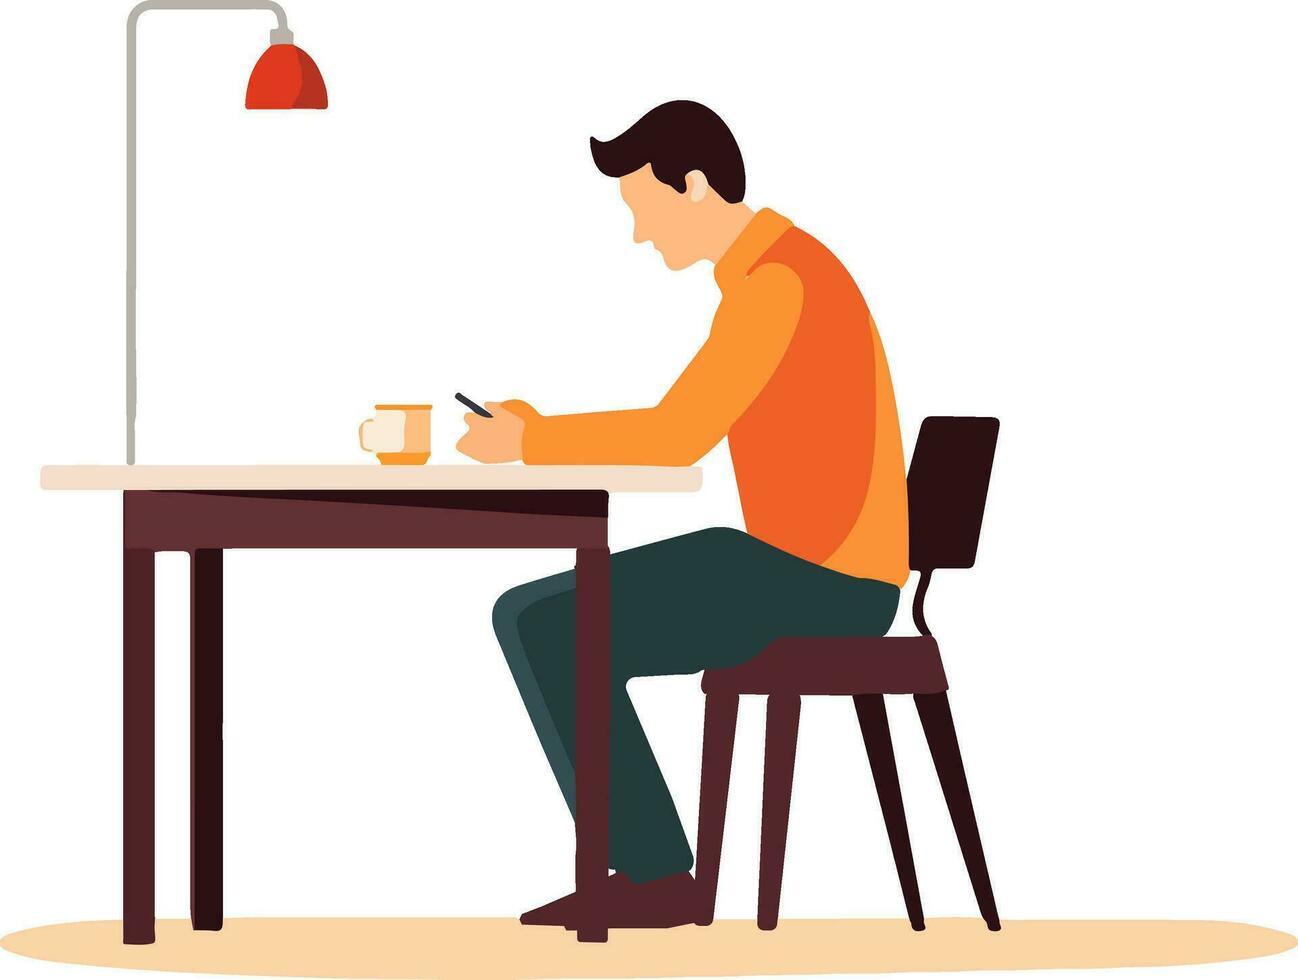 in Verbindung gebracht und beschäftigt, verlobt - - veranschaulichen ein Mann Sitzung beim ein Tisch, vertieft im seine Telefon. Erfassung modern Kommunikation und Technologie mit diese Vektor Illustration.